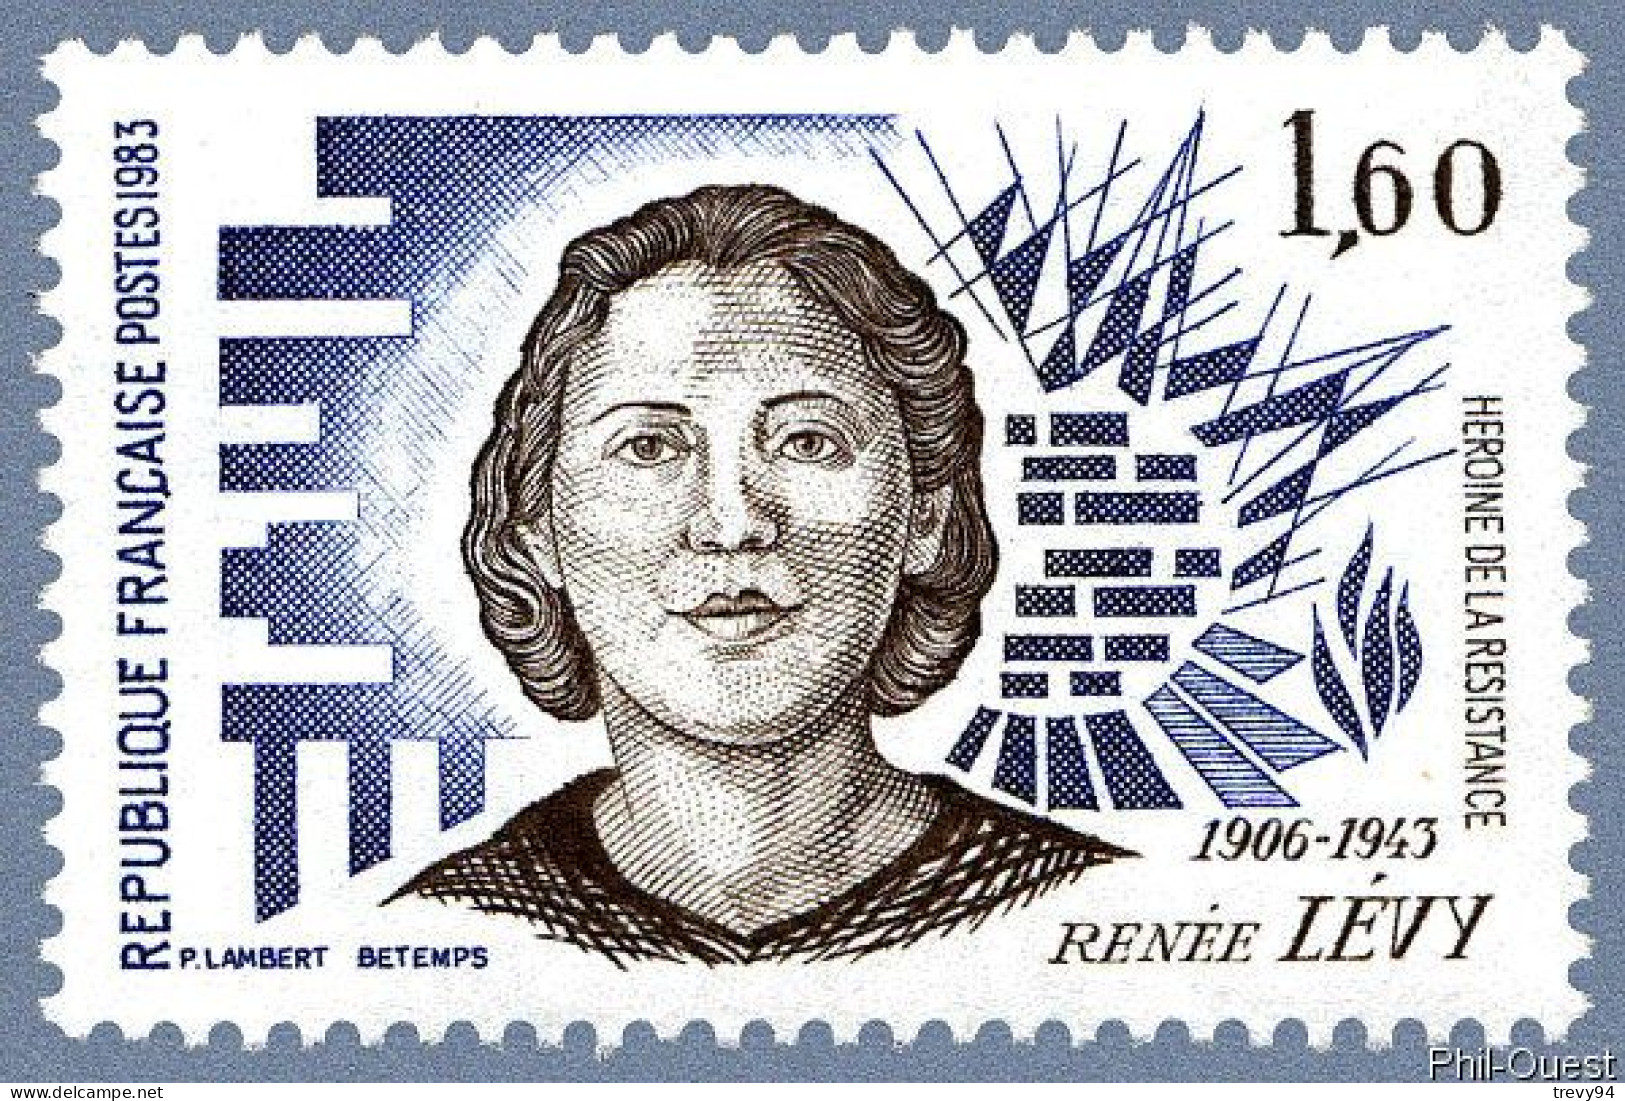 Timbre De 1983 - Héroïnes De La Résistance Renée Levy 1906-1943 - Yvert & Tellier N° 2293 - Nuovi